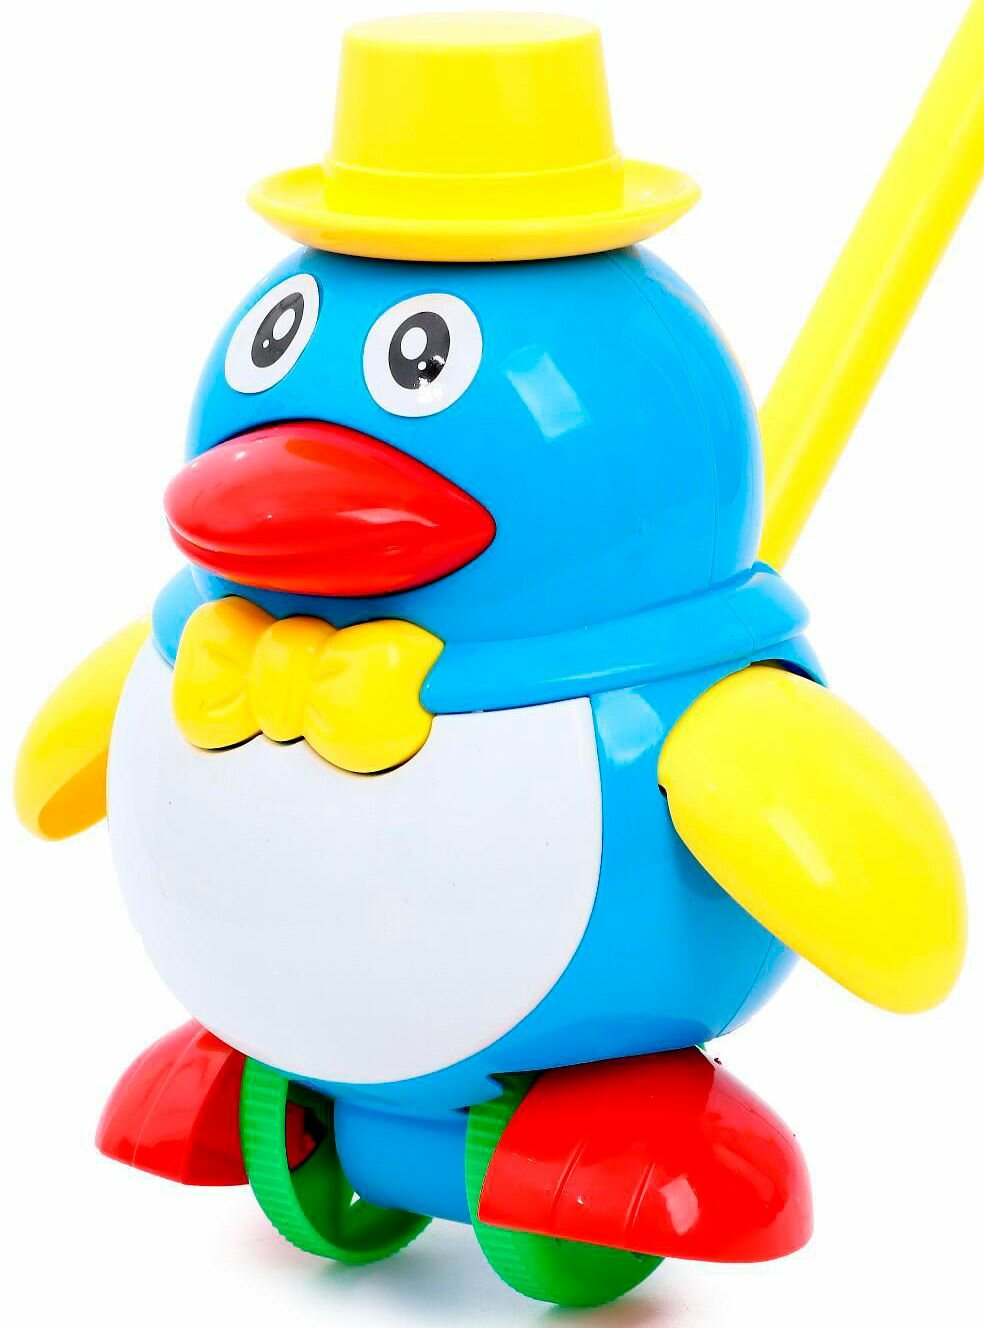 Детская каталка "Пингвин" с ручкой, игрушка на палочке для дома и улицы, цвета микс